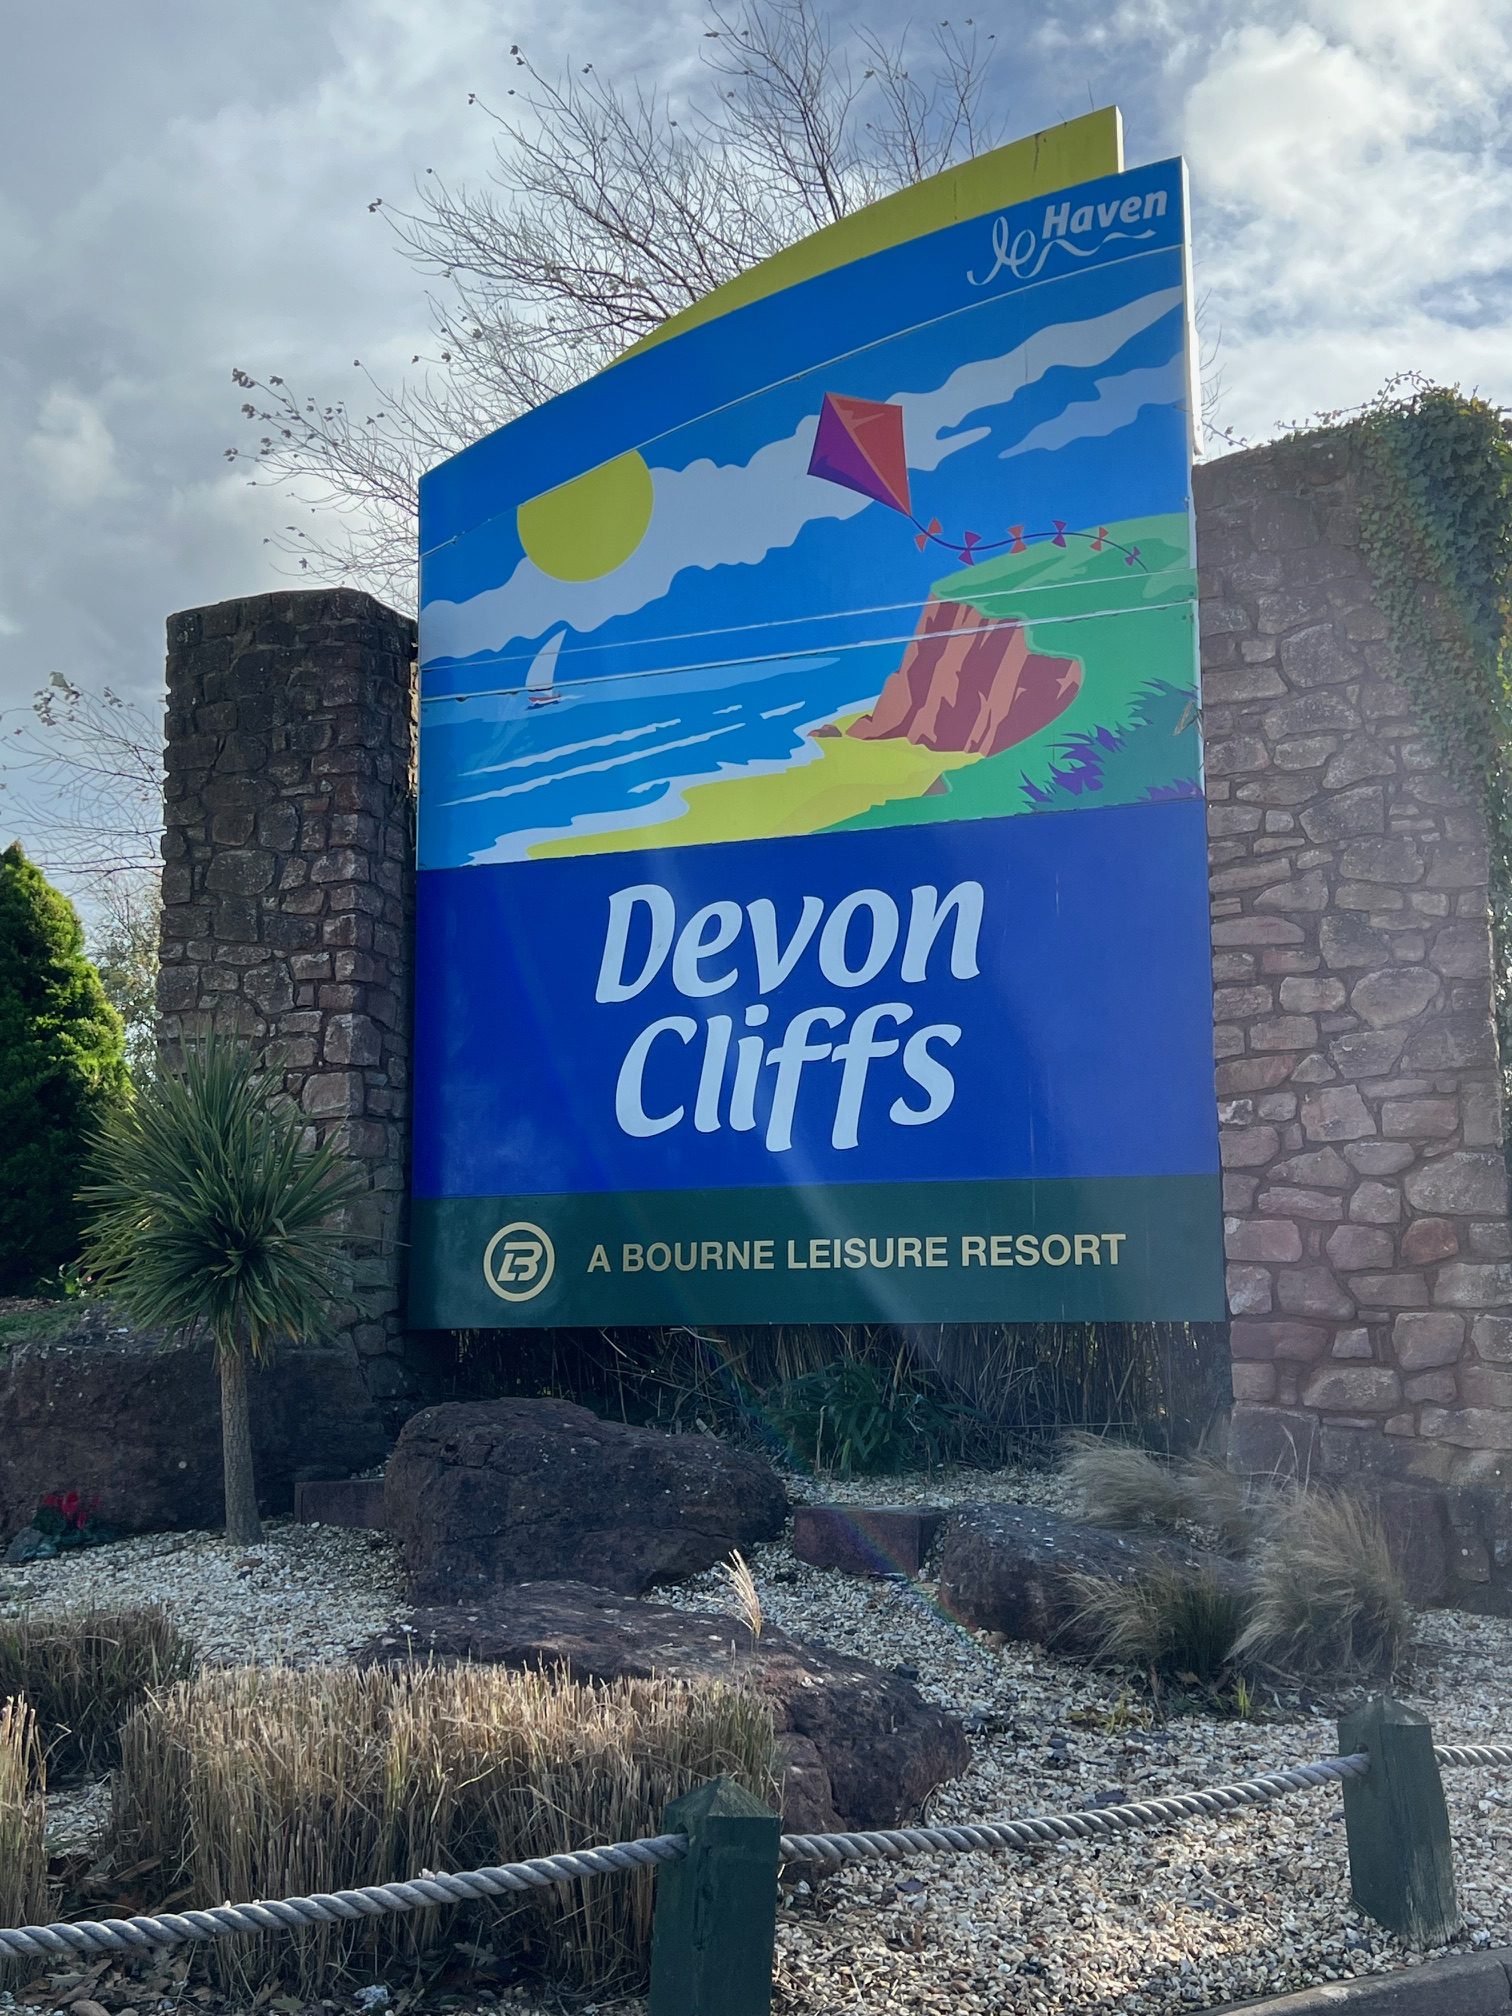 Devon Cliffs holiday park sign